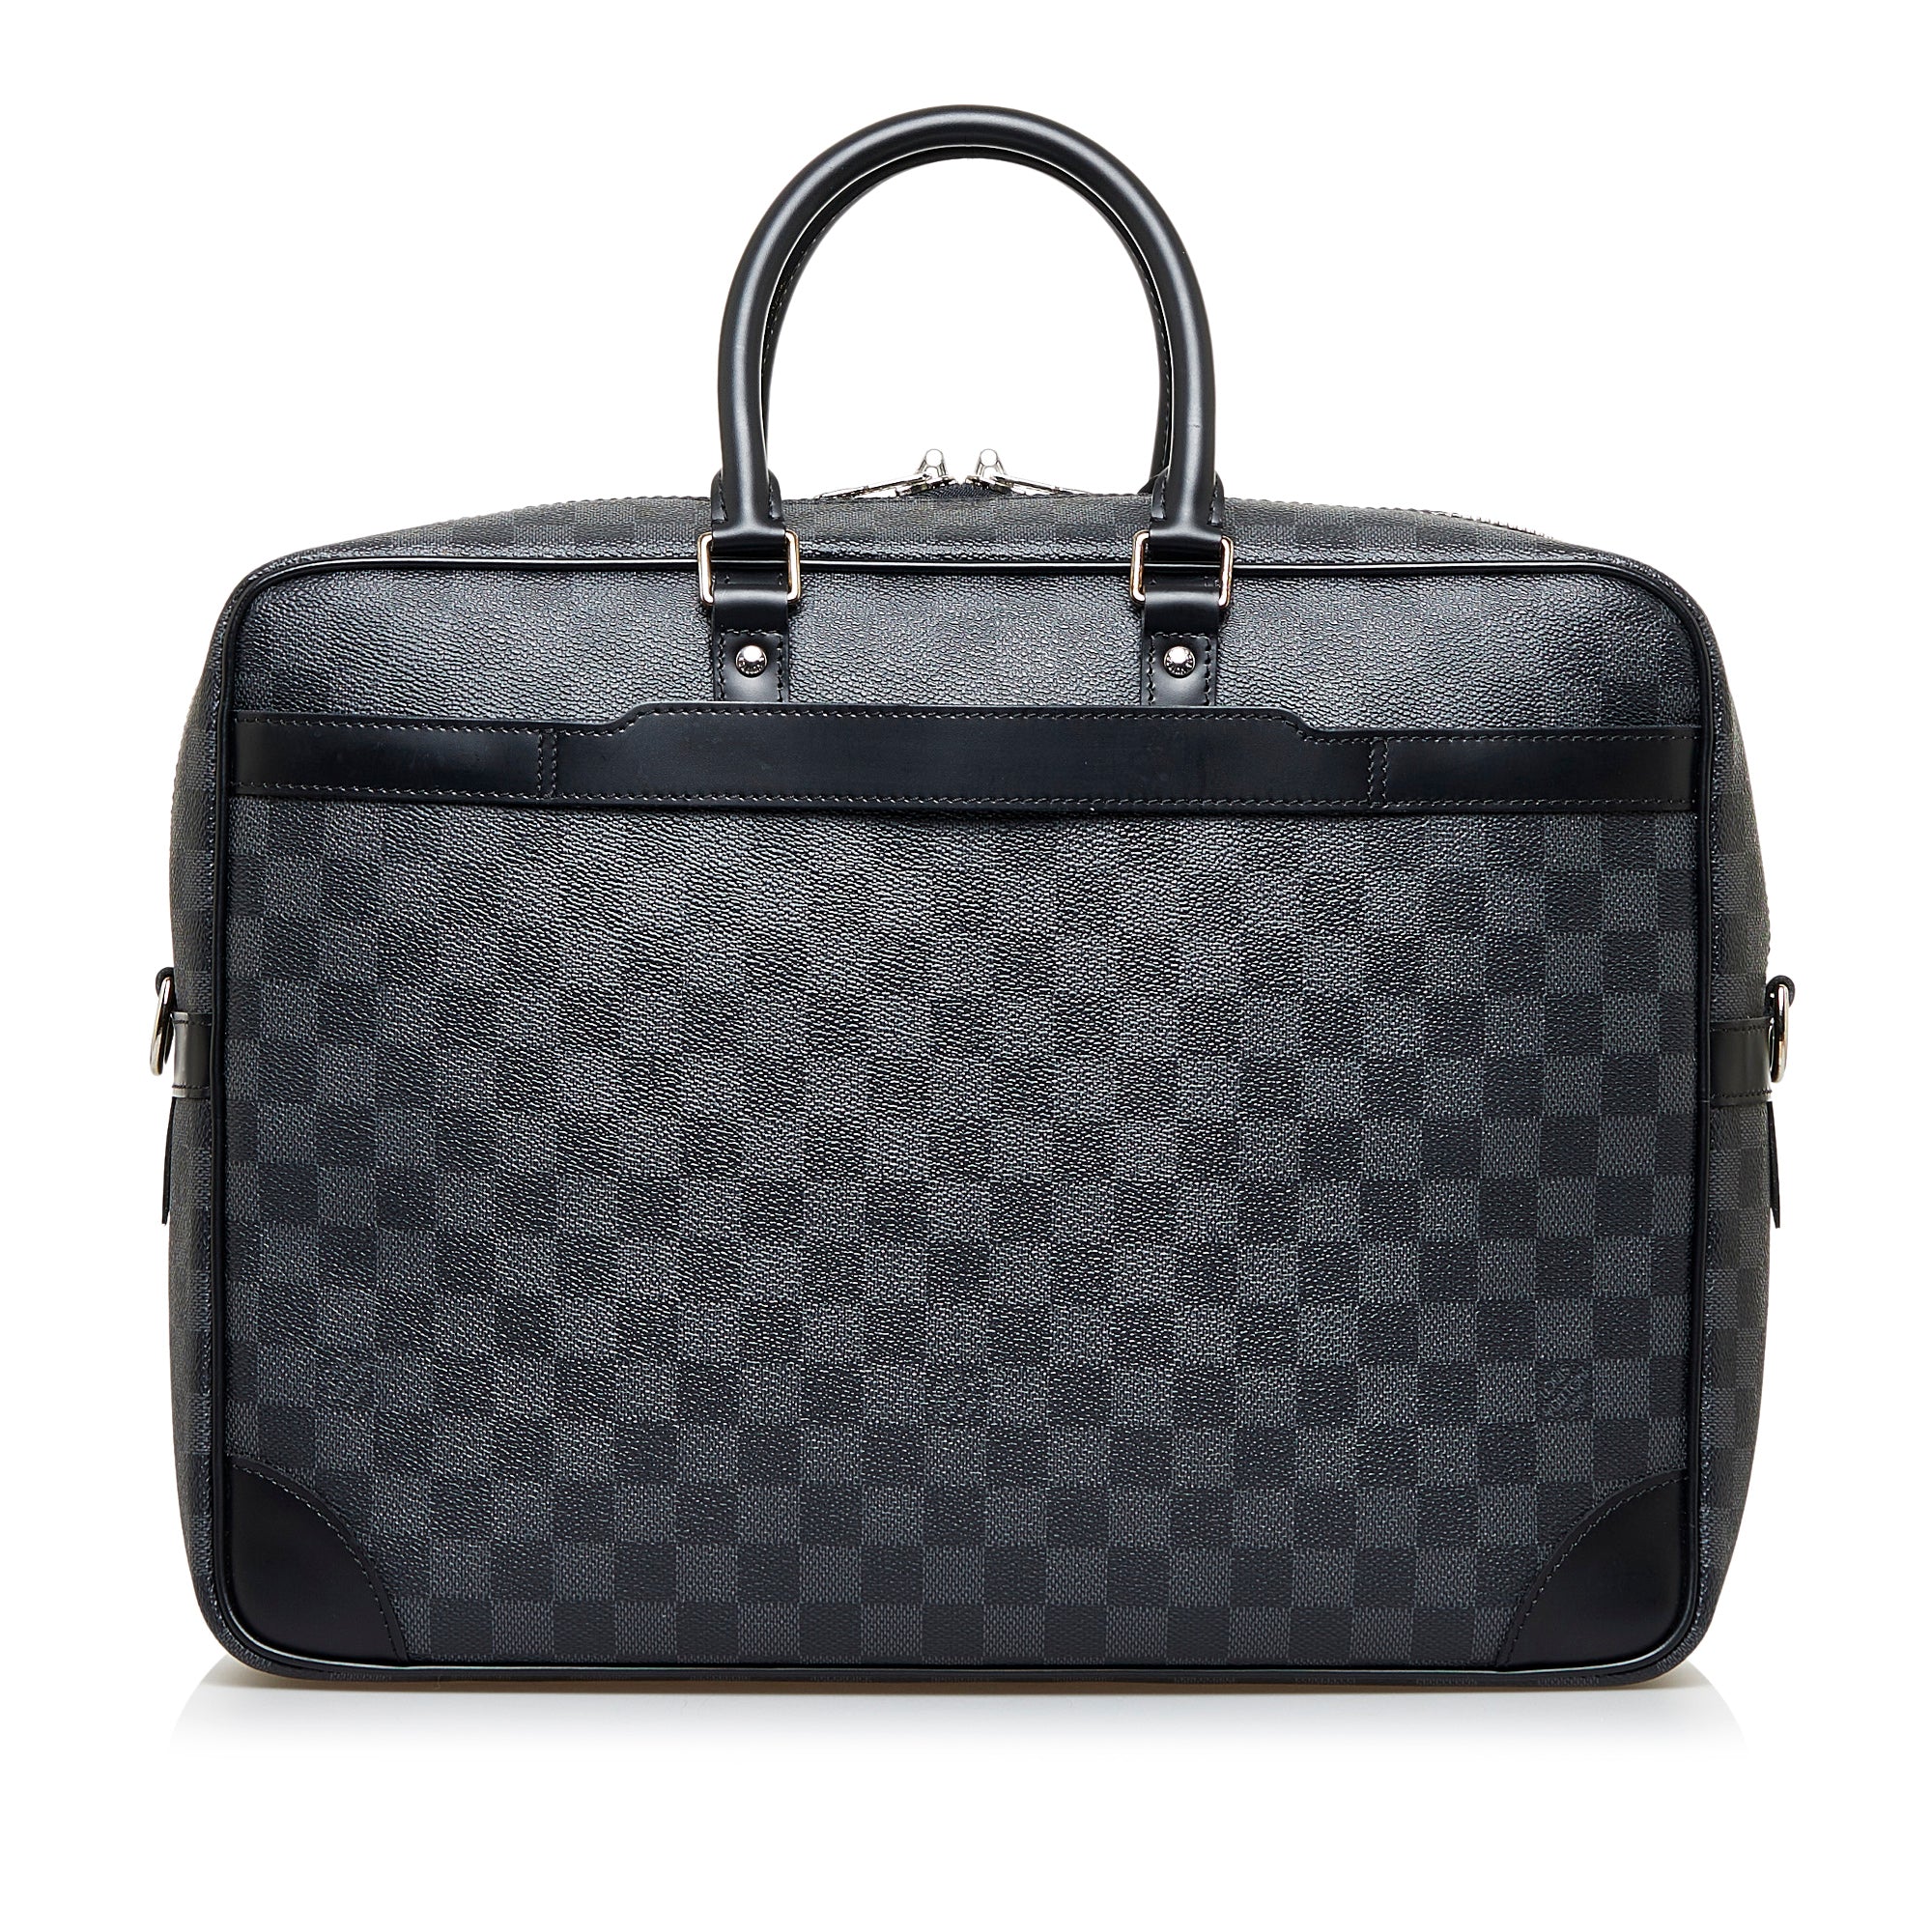 Cra-wallonieShops Revival  Louis Vuitton Olympe handbag in brown